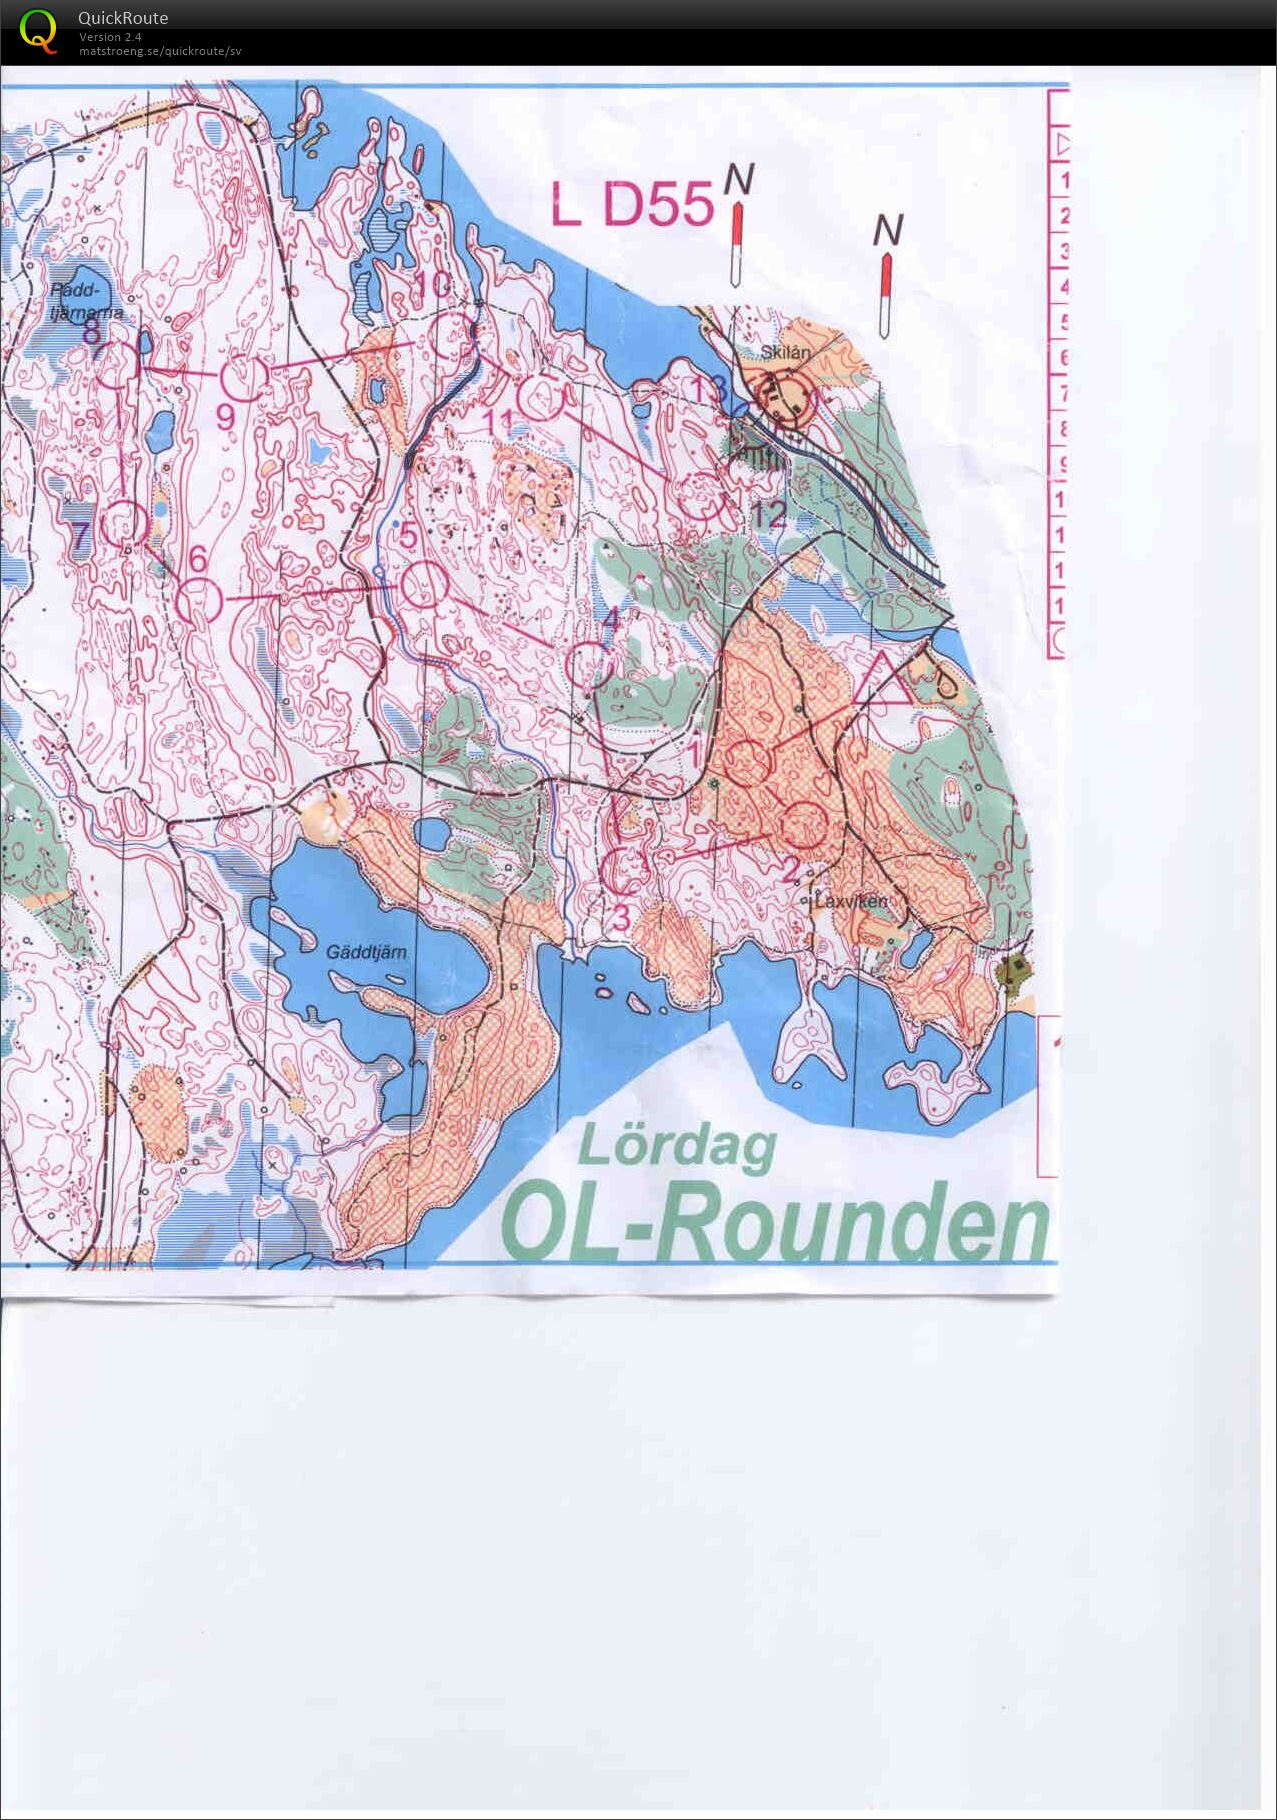 OL-rounden lång (15/08/2015)